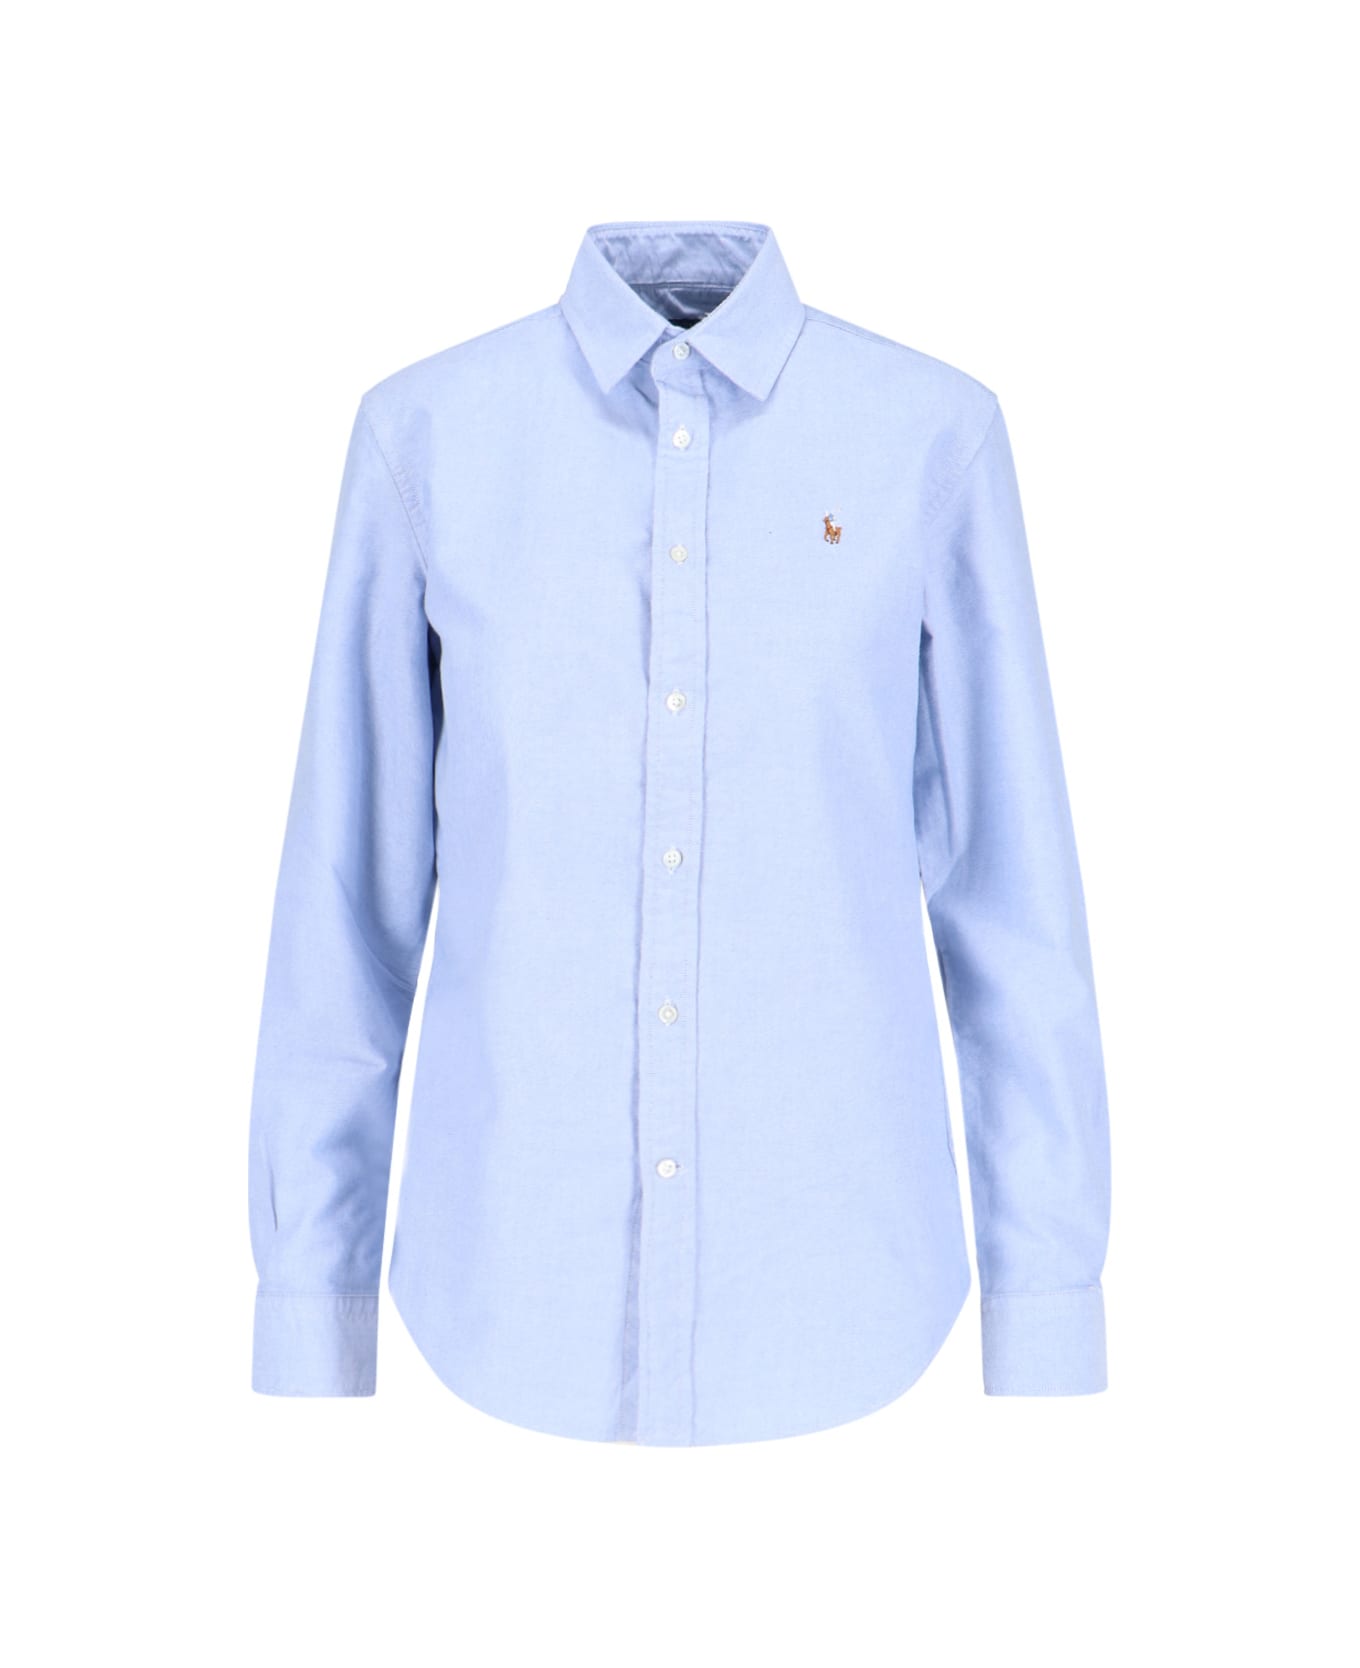 Polo Ralph Lauren Oxford Logo Shirt - Light Blue シャツ